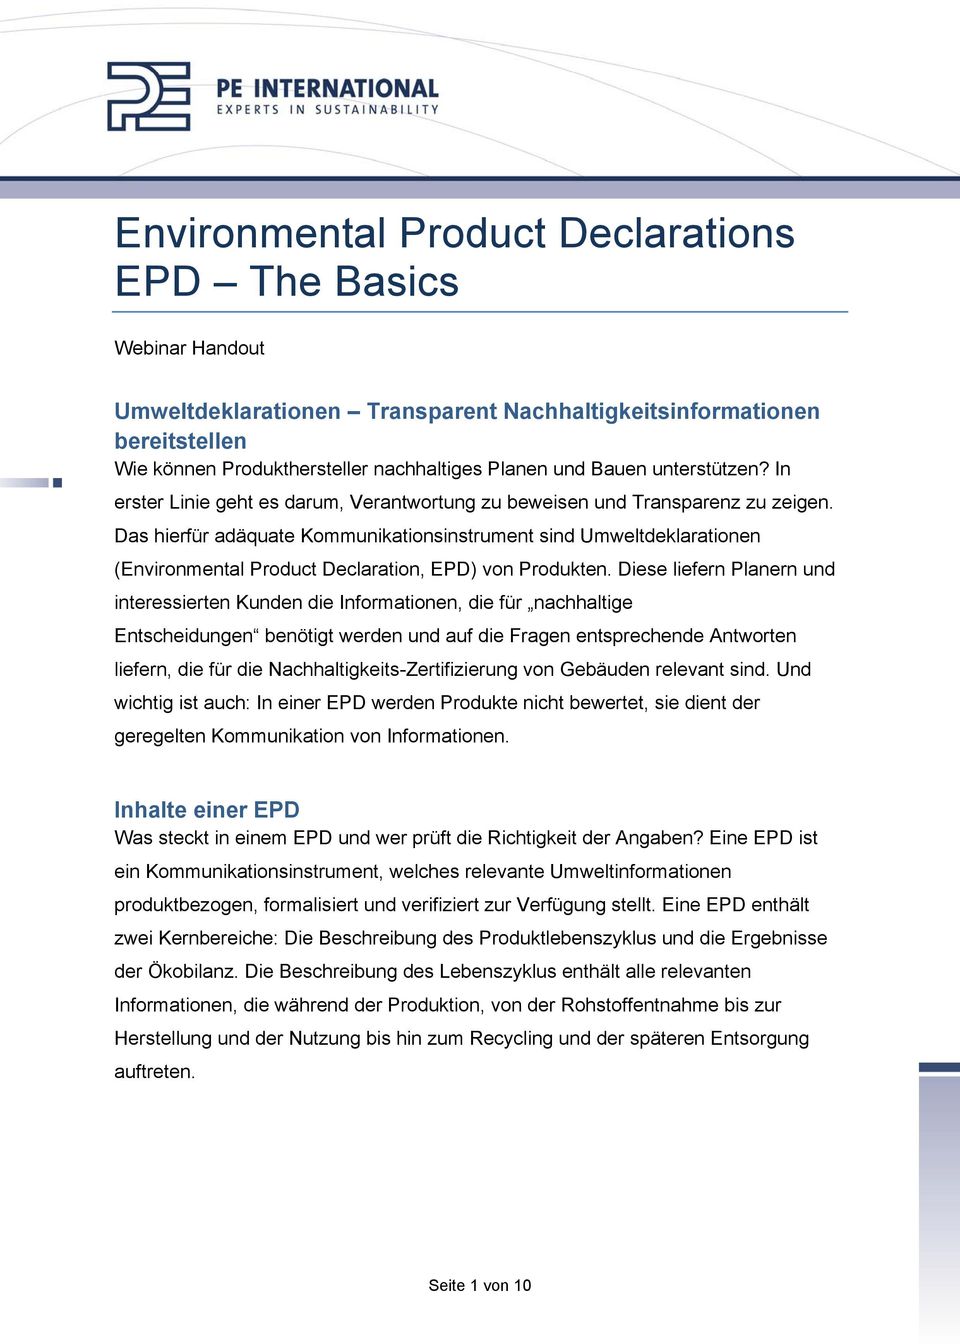 Das hierfür adäquate Kommunikationsinstrument sind Umweltdeklarationen (Environmental Product Declaration, EPD) von Produkten.